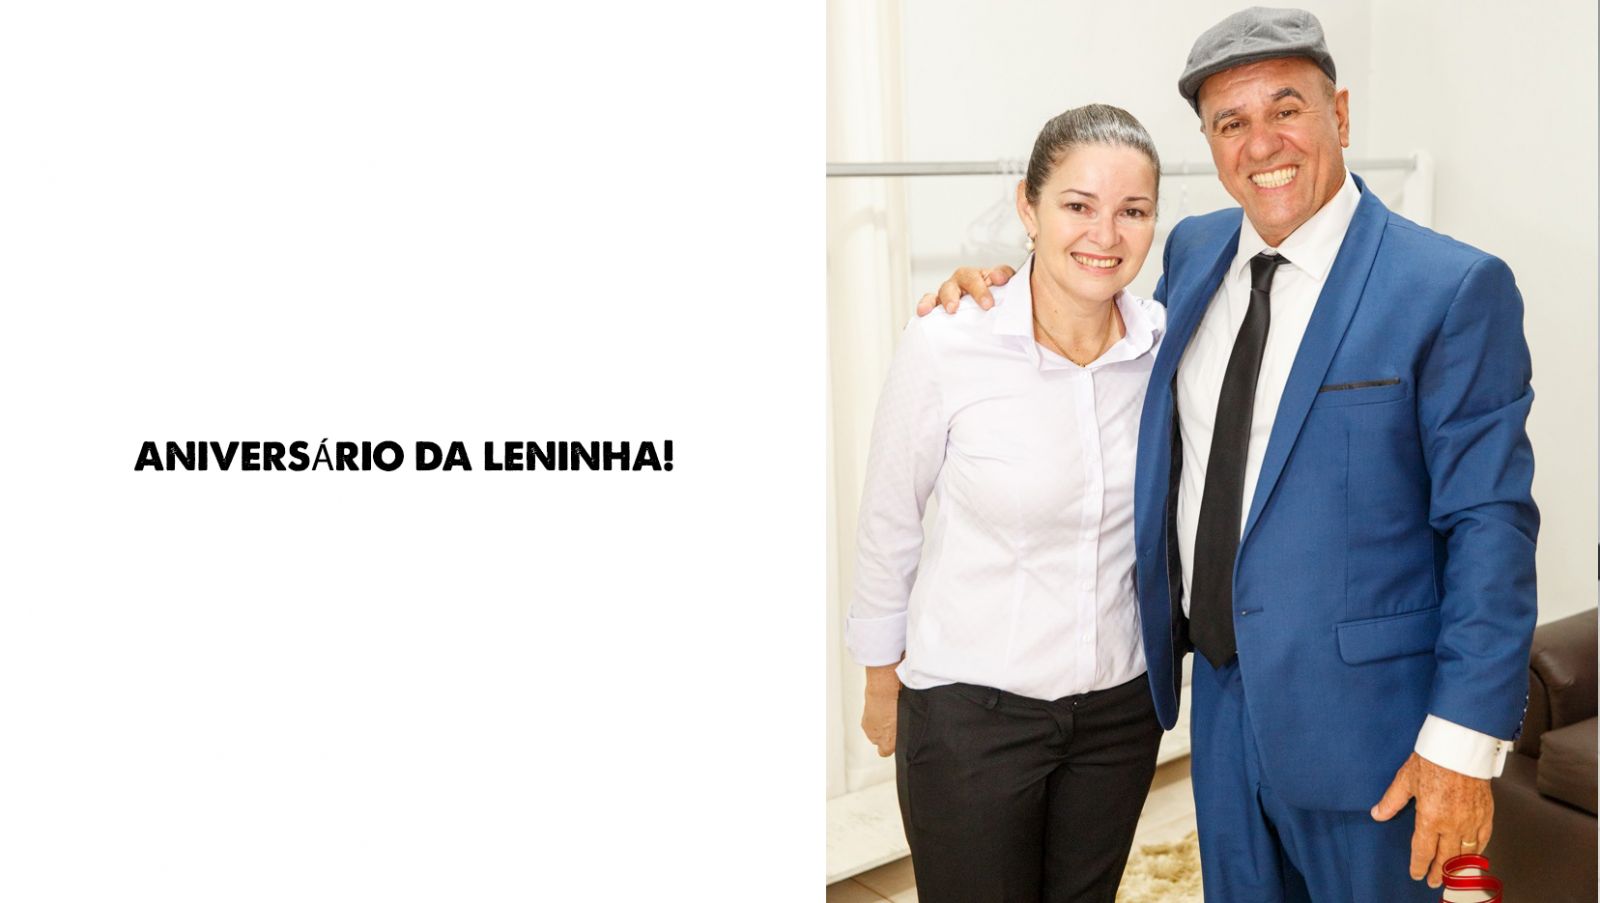 COLUNA SOCIAL MARISA LINHARES: ANIVERSÁRIO DA LENINHA! - News Rondônia